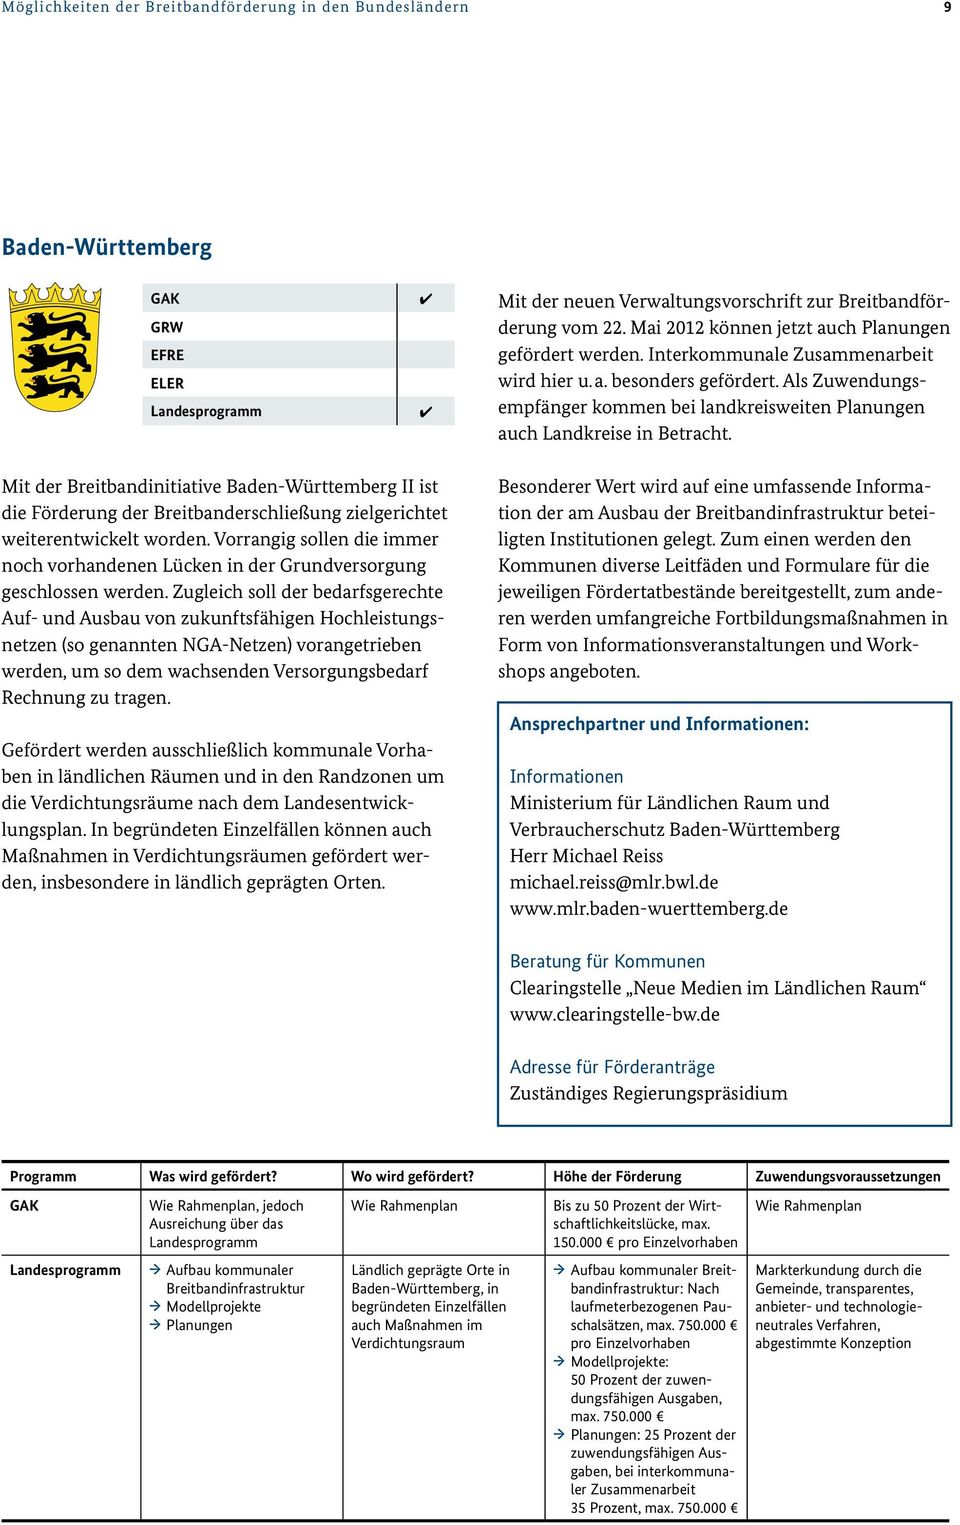 Mit der Breitbandinitiative Baden-Württemberg II ist die Förderung der Breitbanderschließung zielgerichtet weiterentwickelt worden.